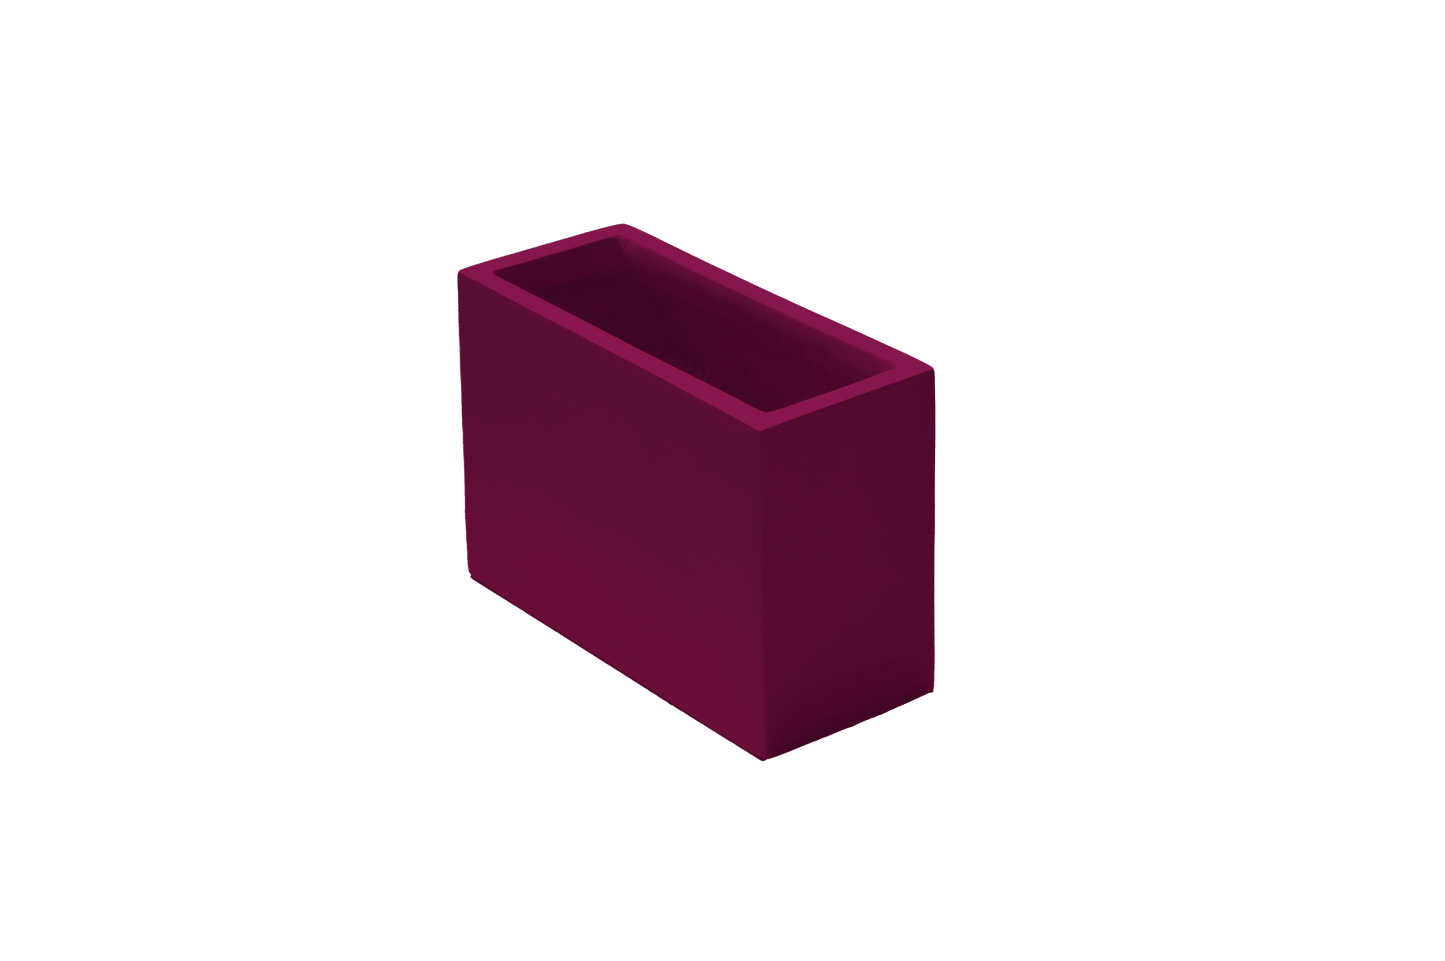 Jay Scotts Nile Wall Fiberglass Planter Box - 12"L x 5"W x 8"H